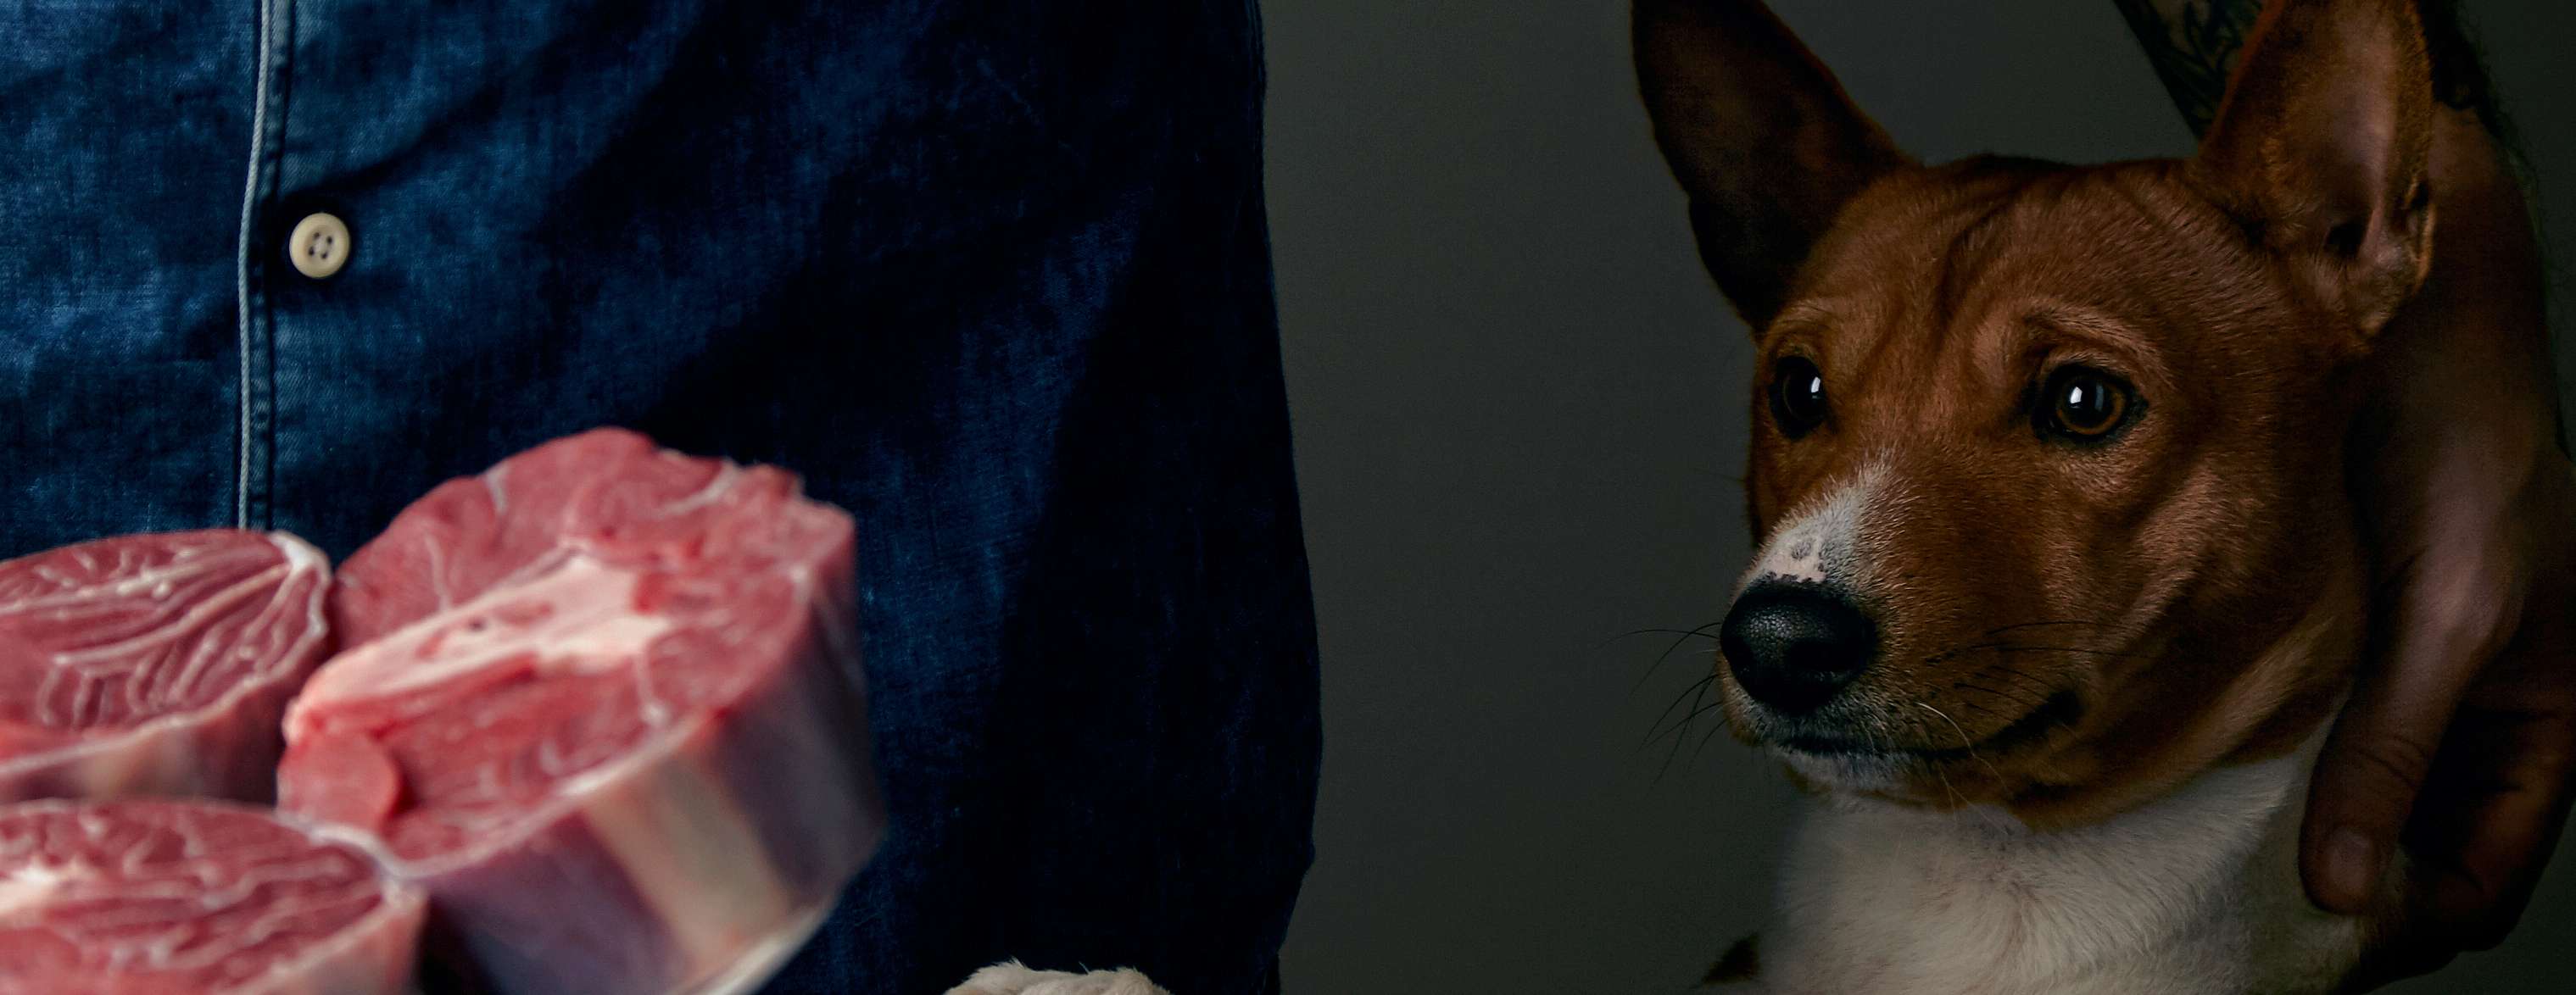  Allianz - Barfen: Hund schaut gespannt auf einen Fleischteller